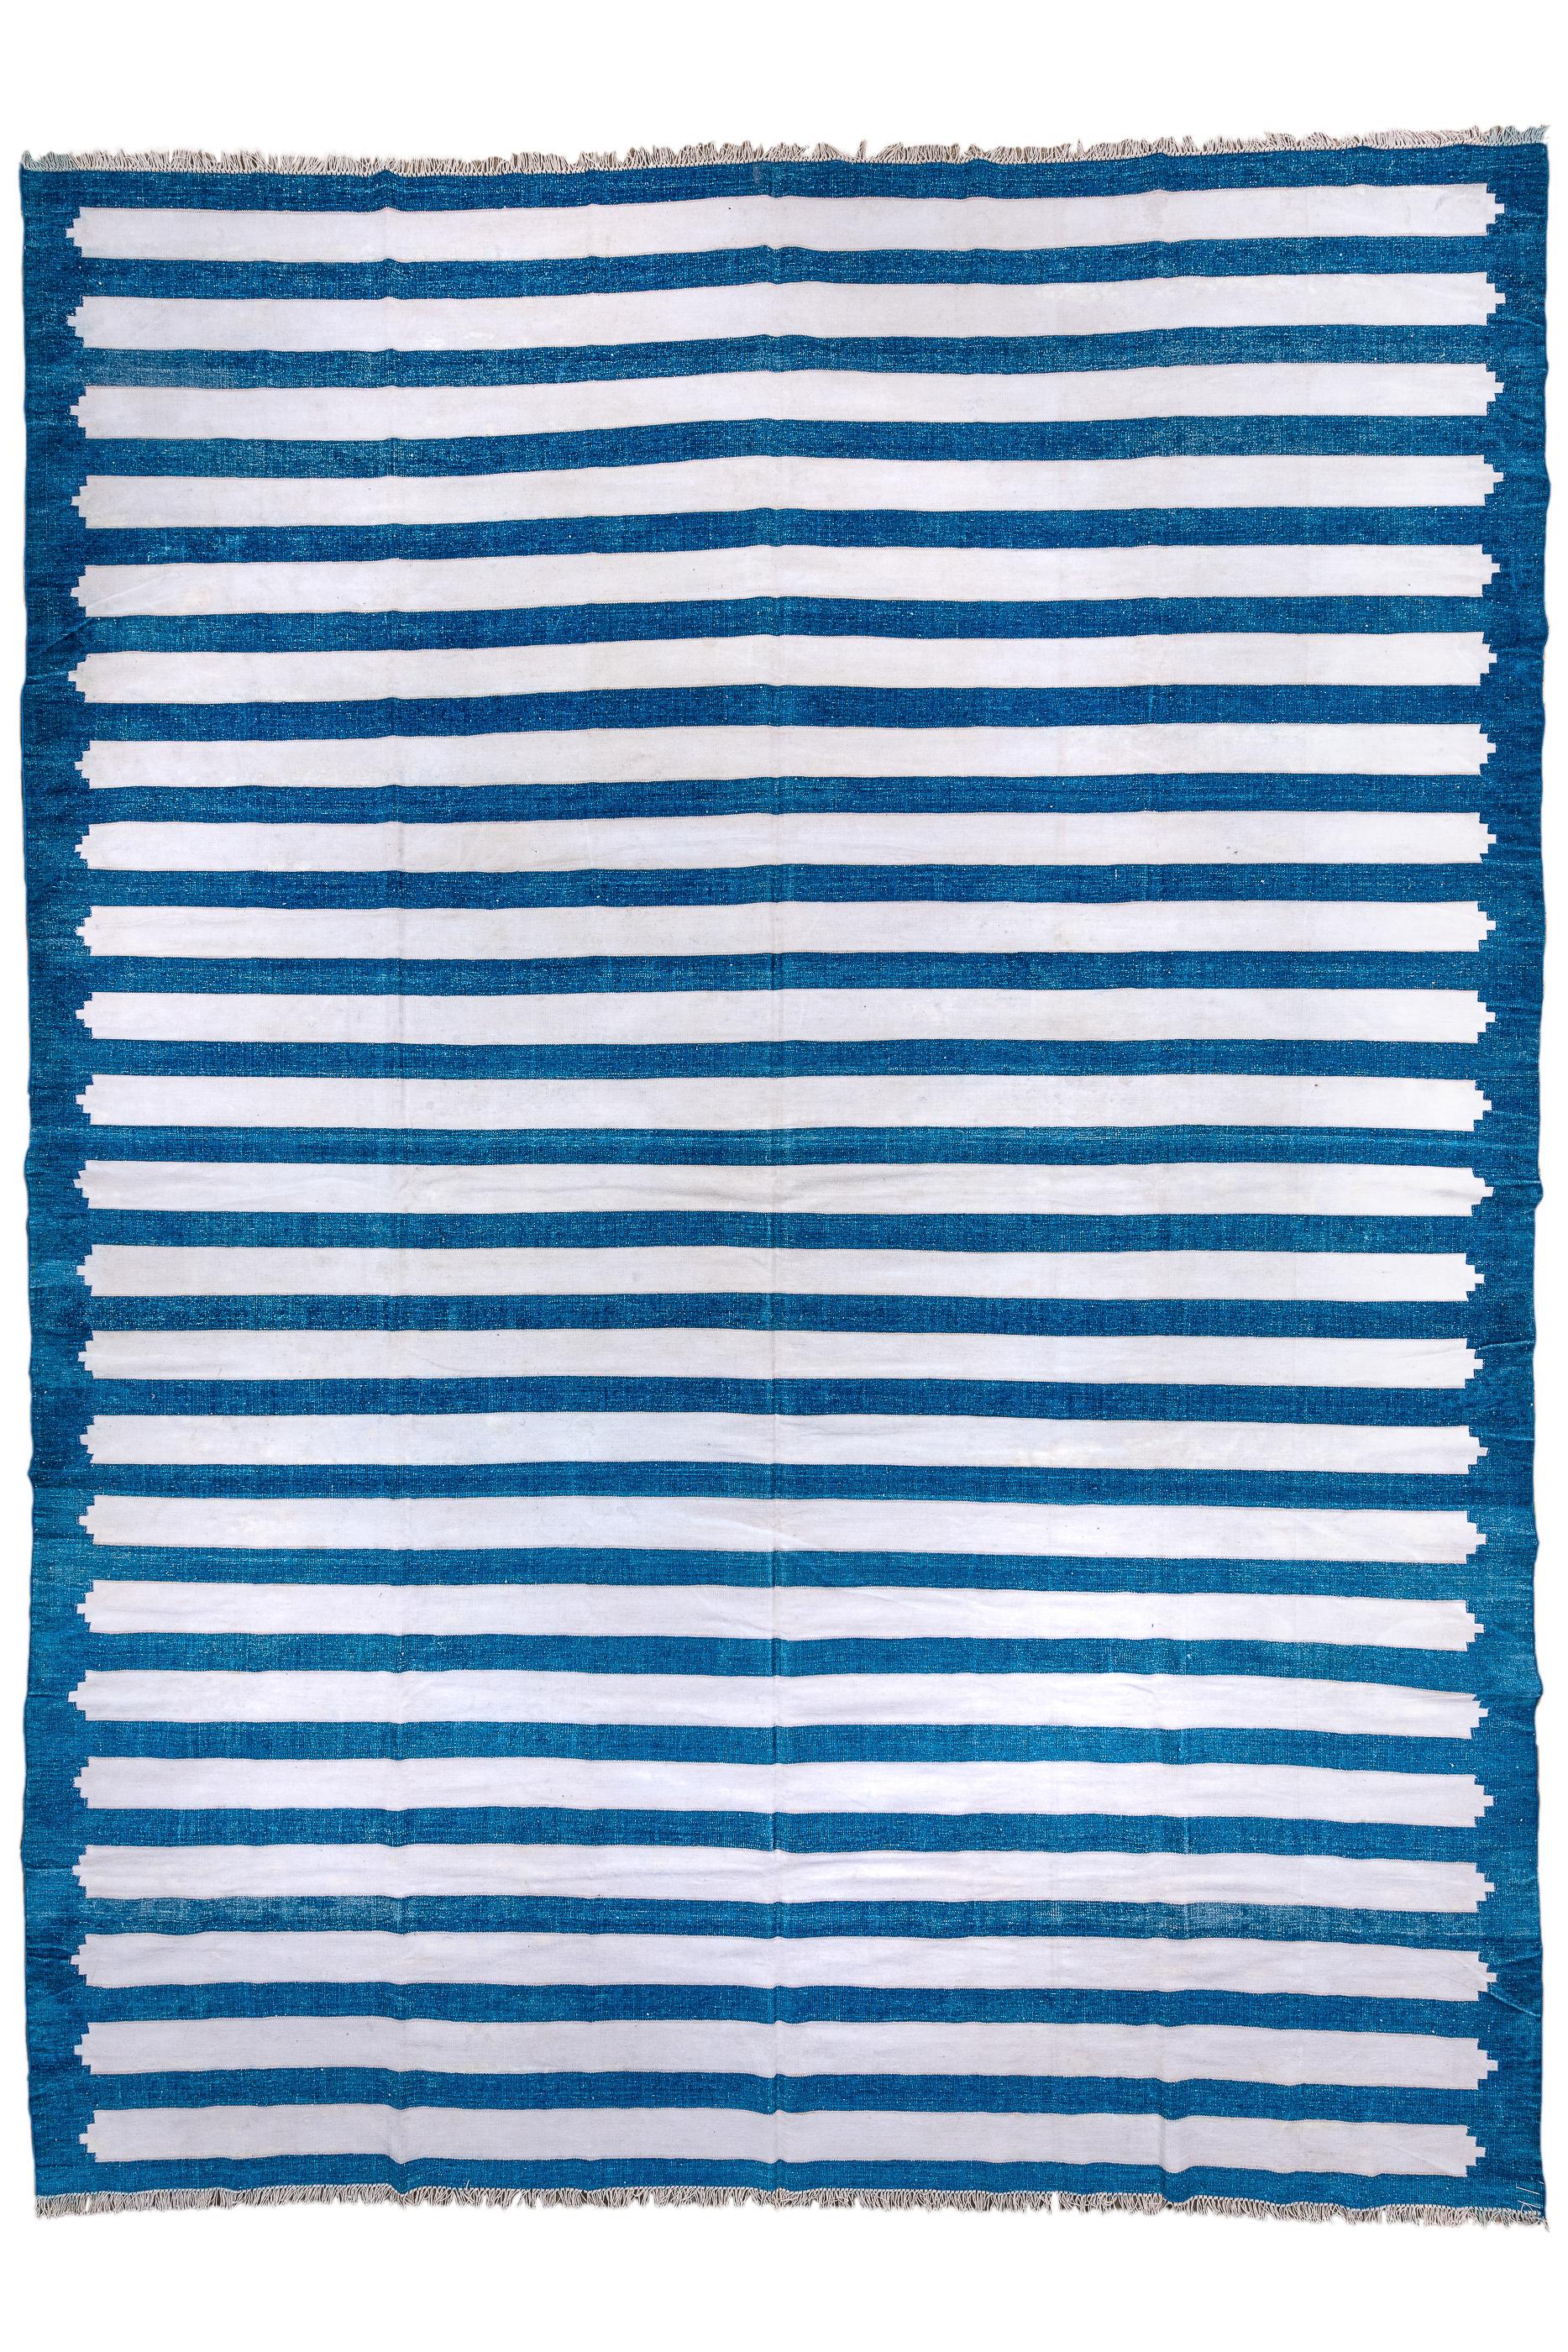 Klassischer blau-weiß gestreifter indischer handgewebter Dhurrie-Teppich. Antiker Flachgewebe-Teppich aus reiner Baumwolle in ausgezeichnetem Zustand. 

Teppich Maßnahmen
10'6x14'1